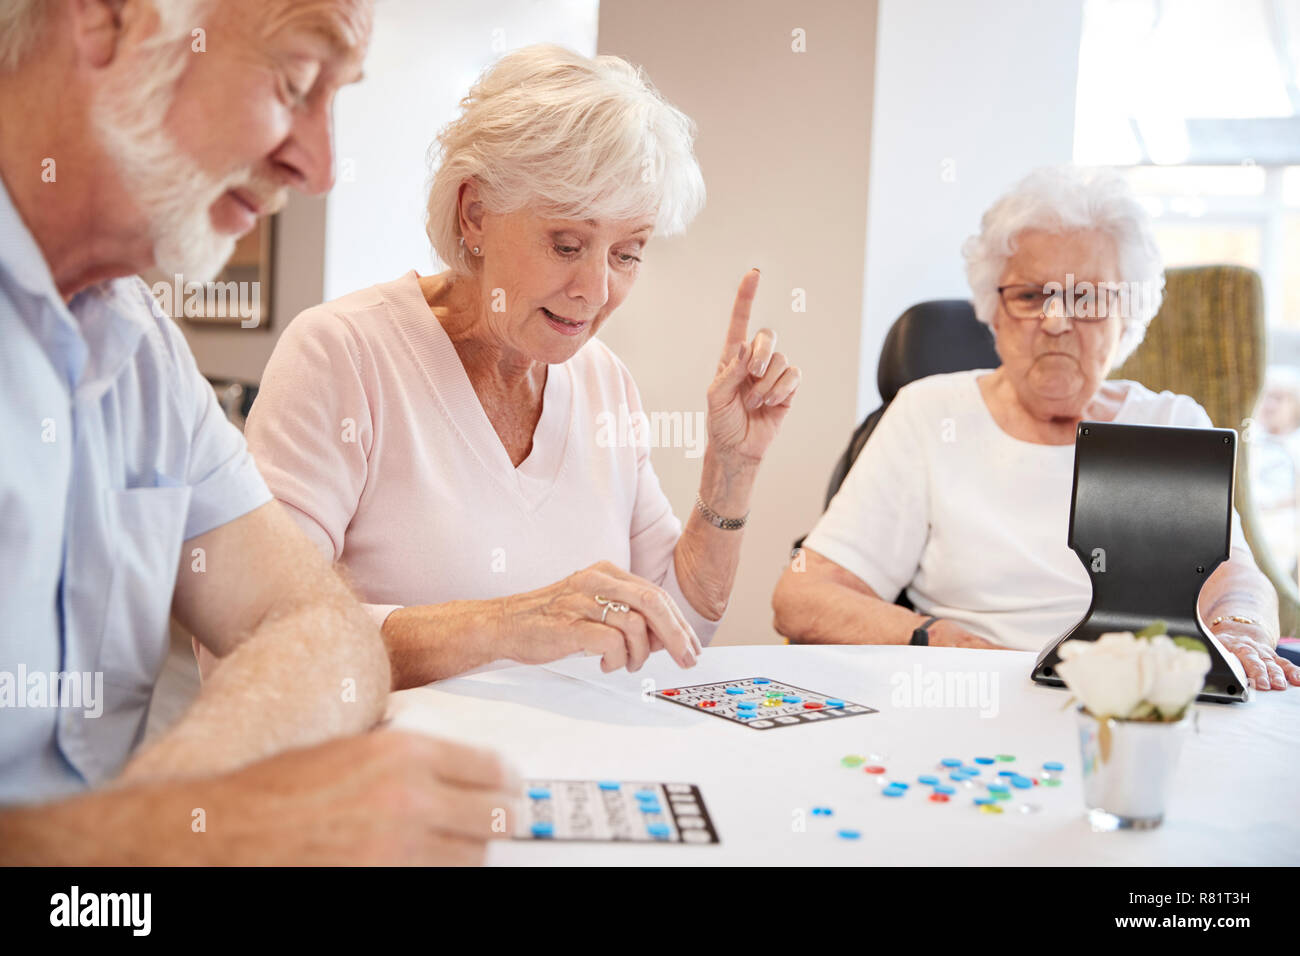 Gruppe Von Senioren Spielen Spiel Von Bingo Im Ruhestand Home Stockfotografie Alamy